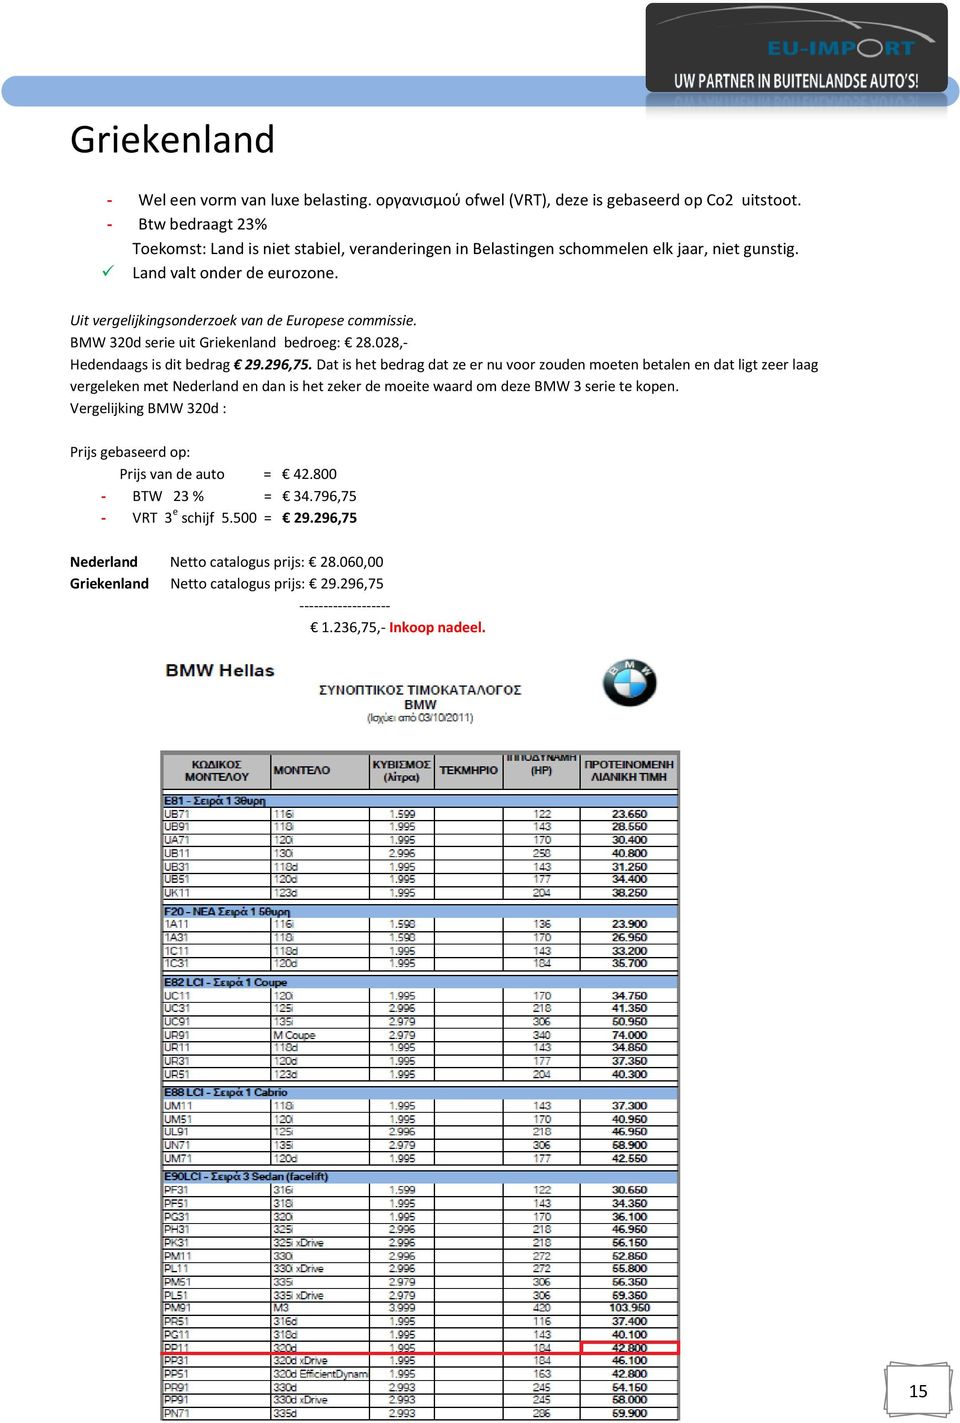 BMW 320d serie uit Griekenland bedroeg: 28.028,- Hedendaags is dit bedrag 29.296,75.